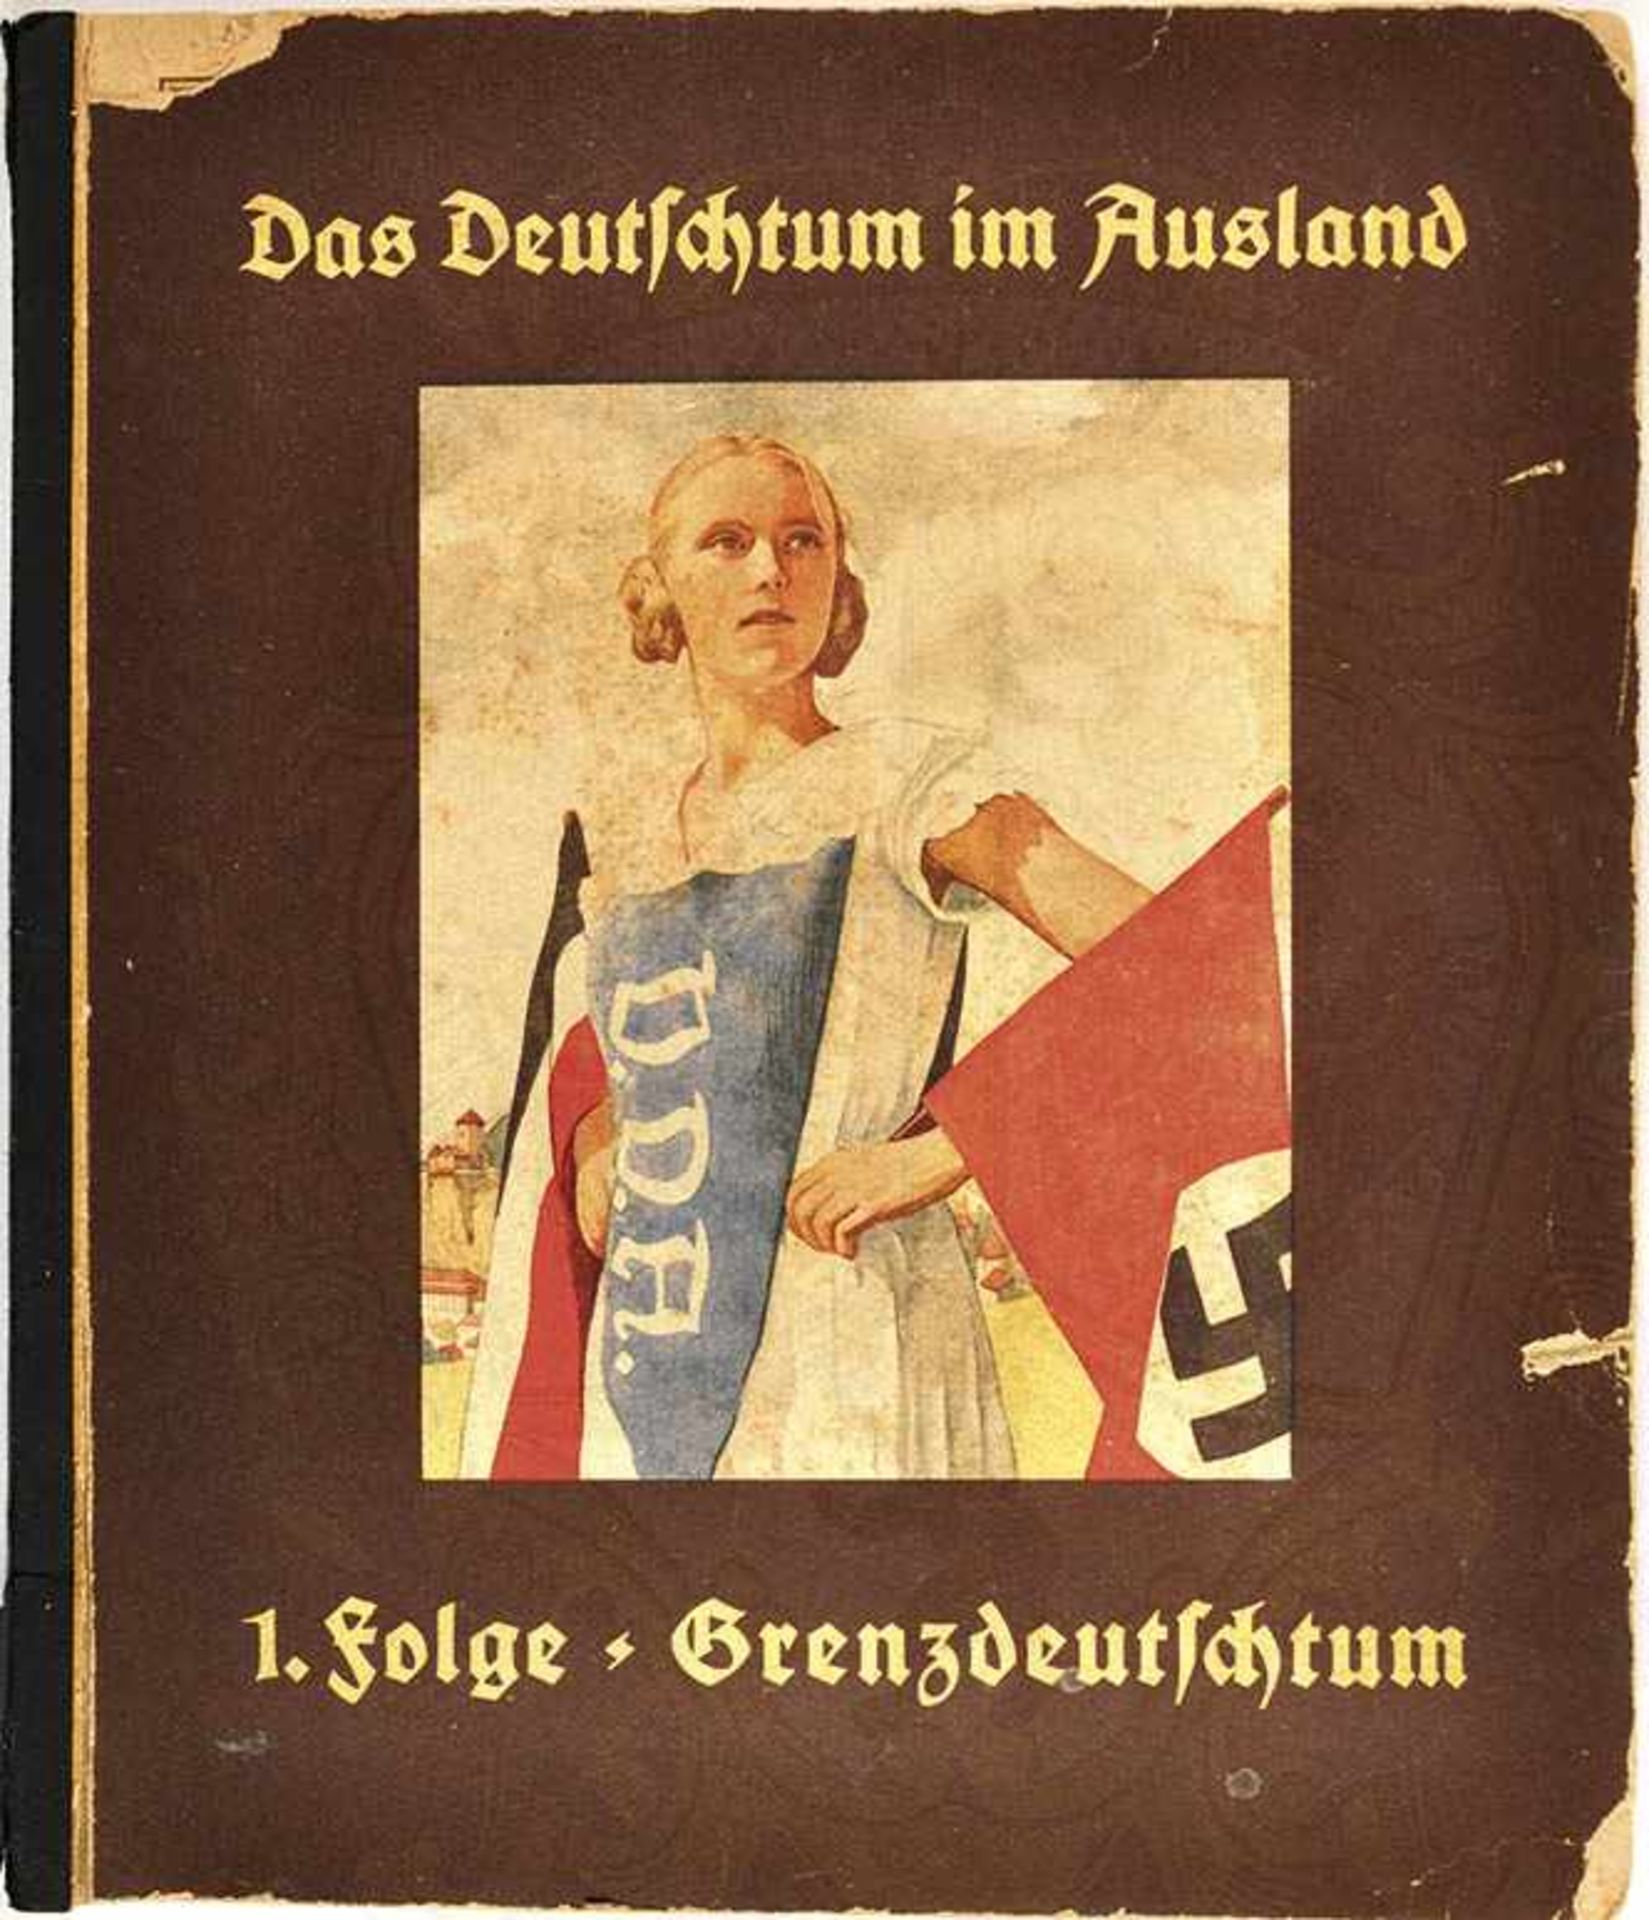 DAS DEUTSCHTUM IM AUSLAND, 1. Folge „Grenzdeutschtum“, Hrsg.: VDA, Hannover, 150 farbige Bilder (